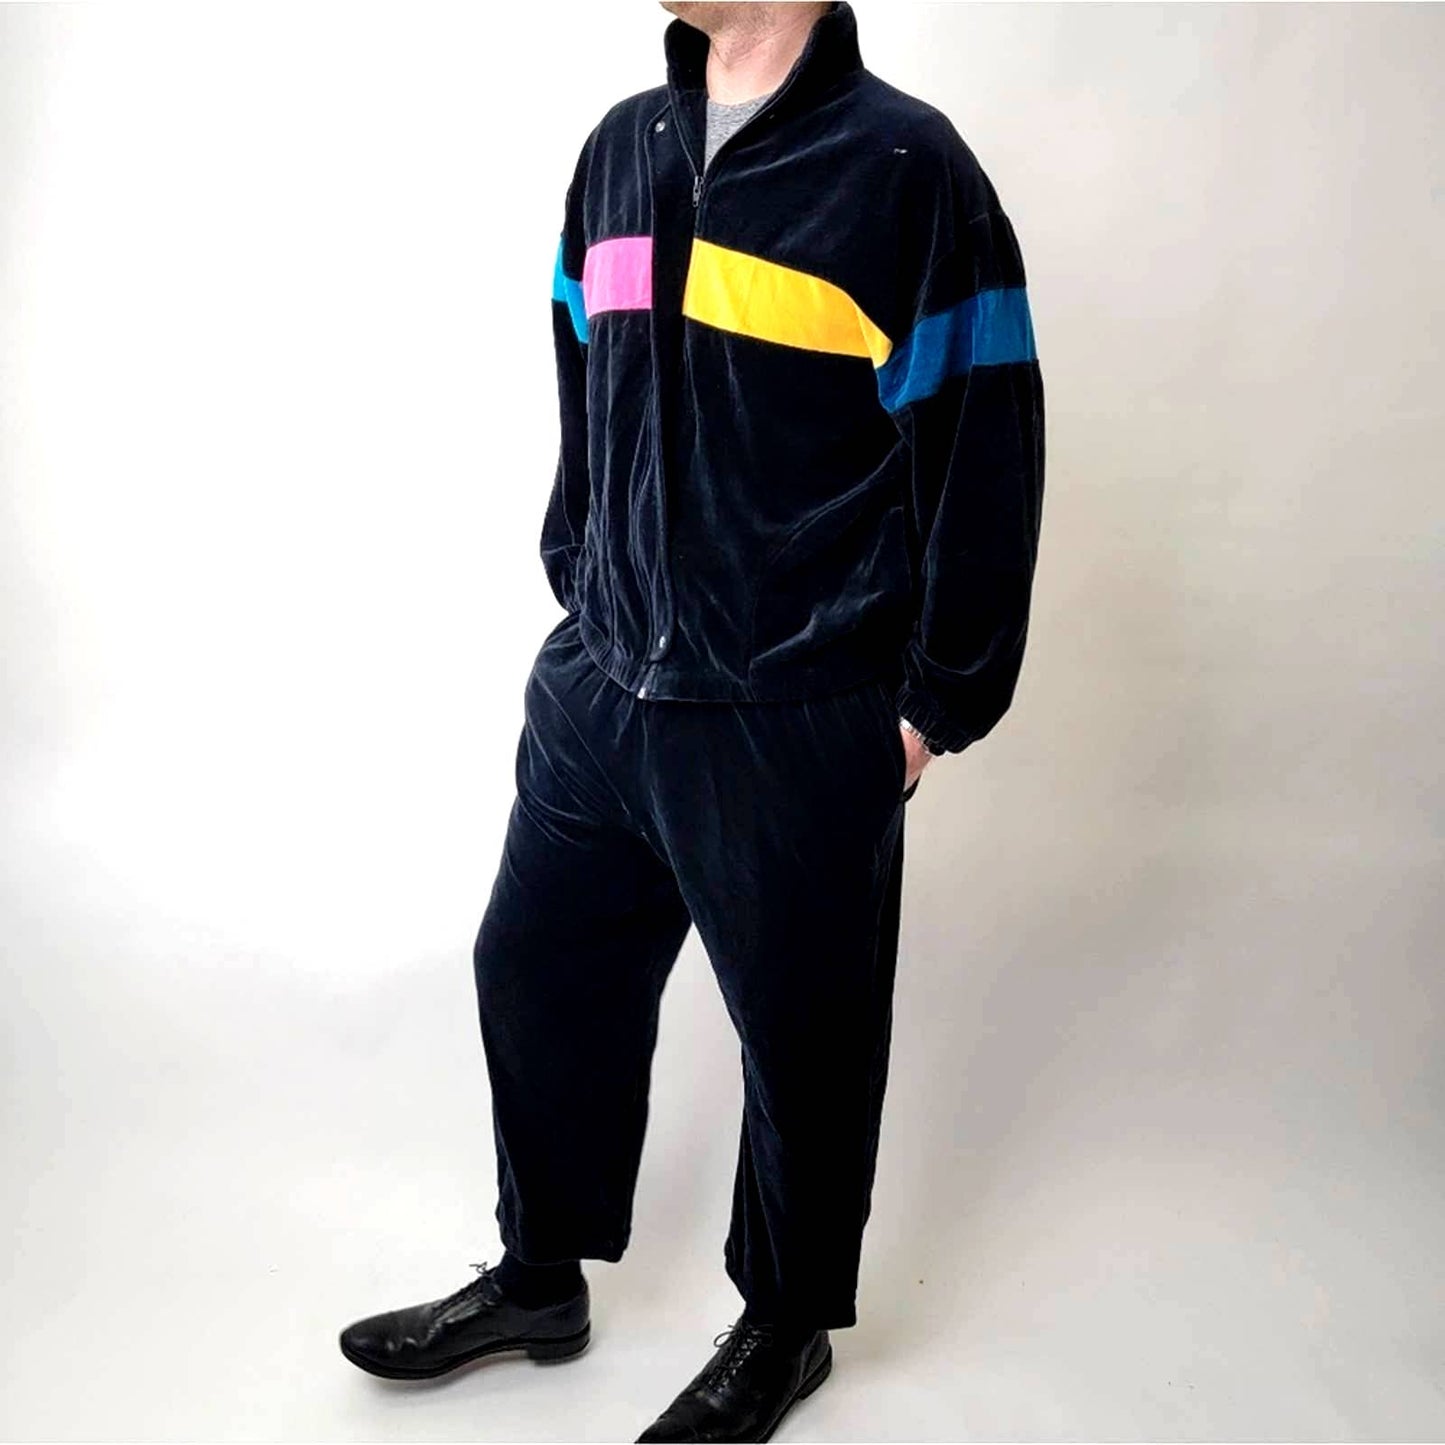 Vintage 90s Velour Track Suit - Multi Color Stripes - XL